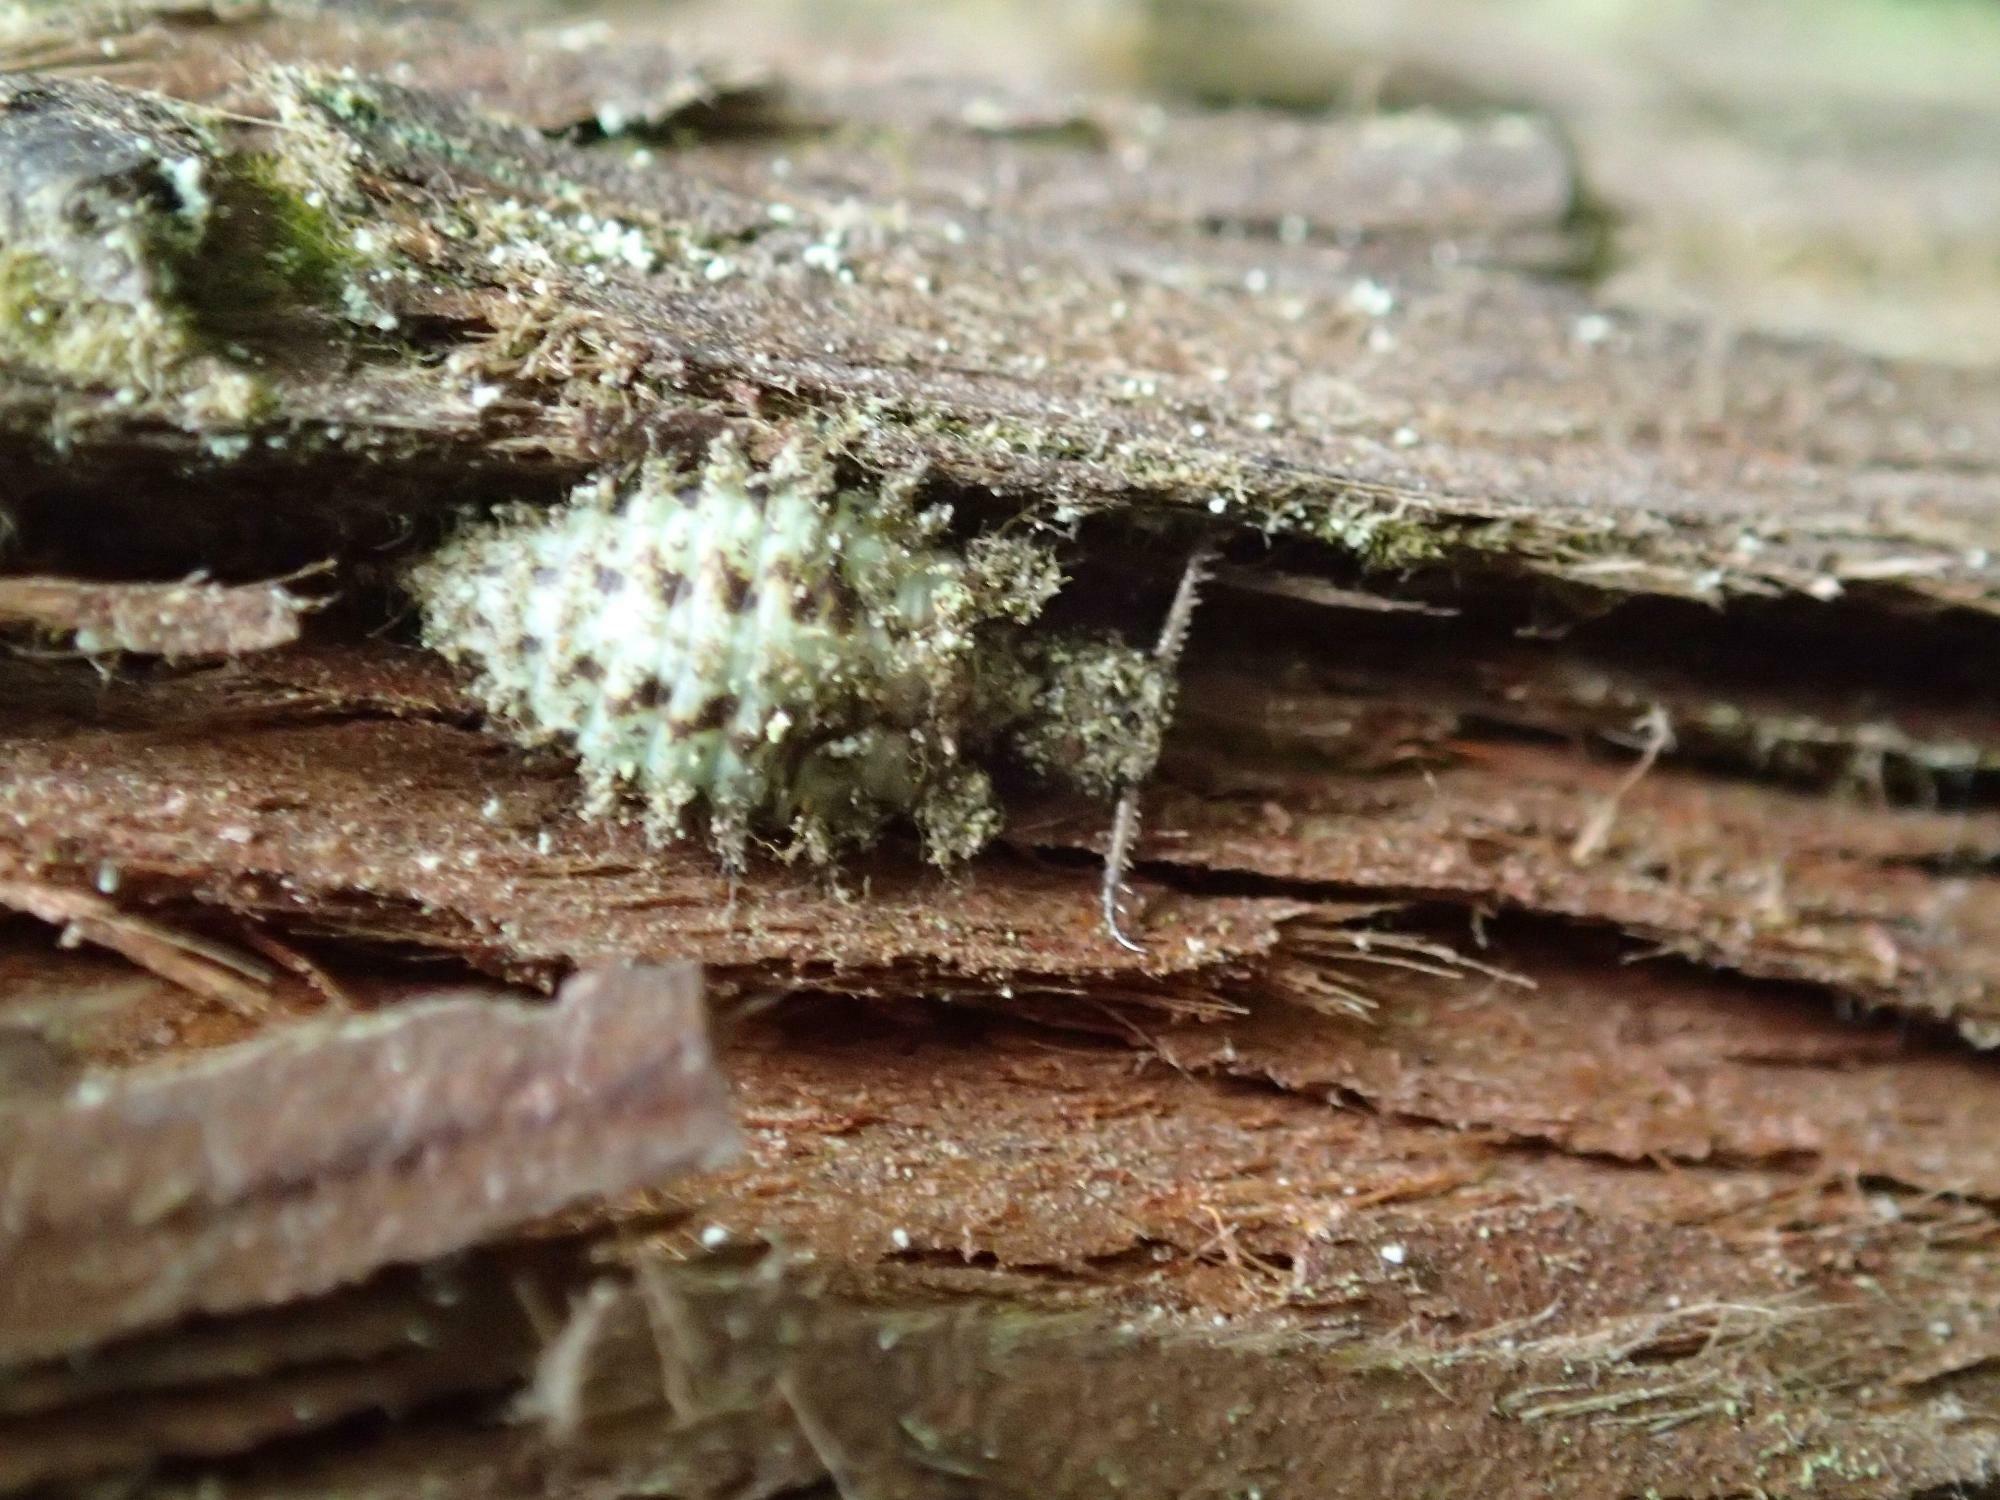 地衣類に覆われた杉の木にいたコマダラウスバカゲロウ幼虫。